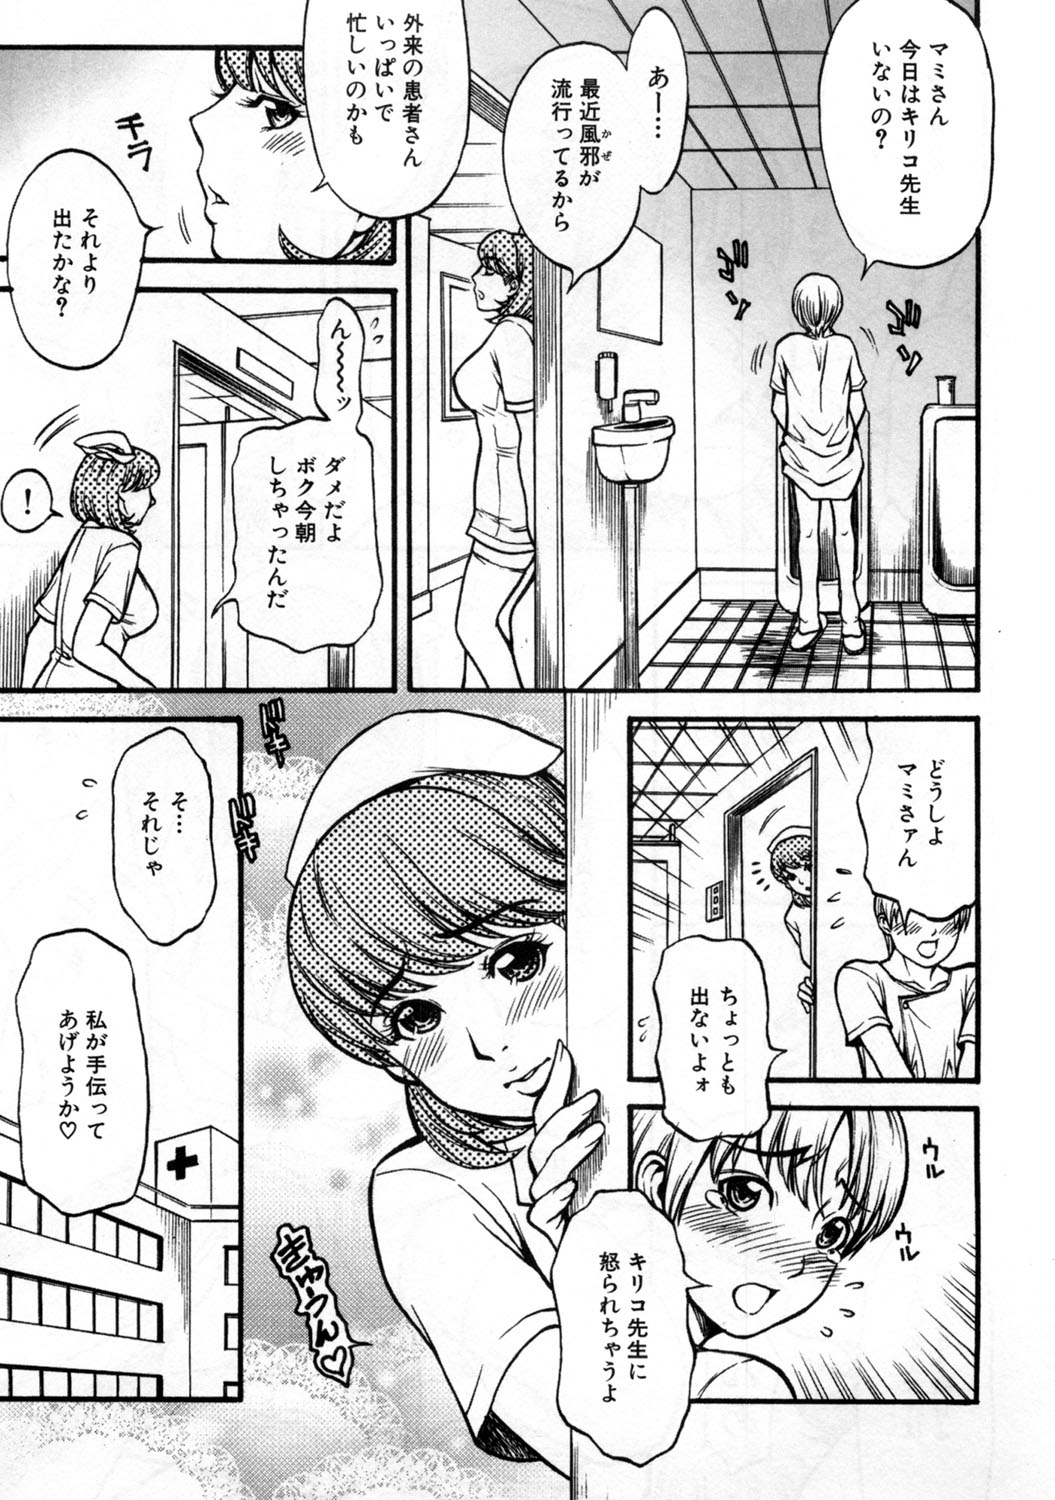 [Kuniaki Kitakata] Boku no Mama (My Mom) Chapters 1-4 page 43 full